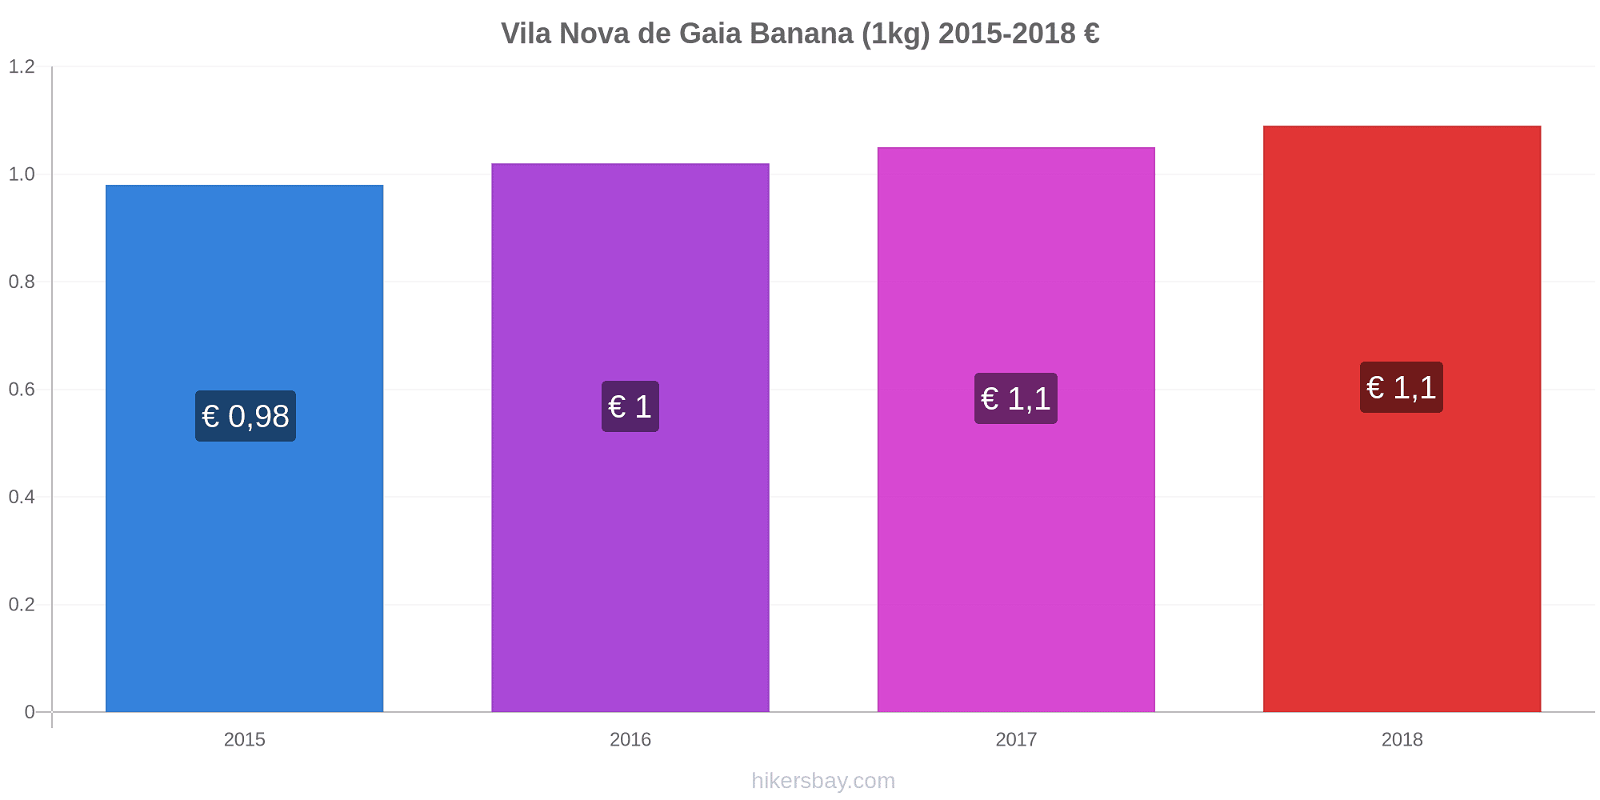 Vila Nova de Gaia variação de preço Banana (1kg) hikersbay.com